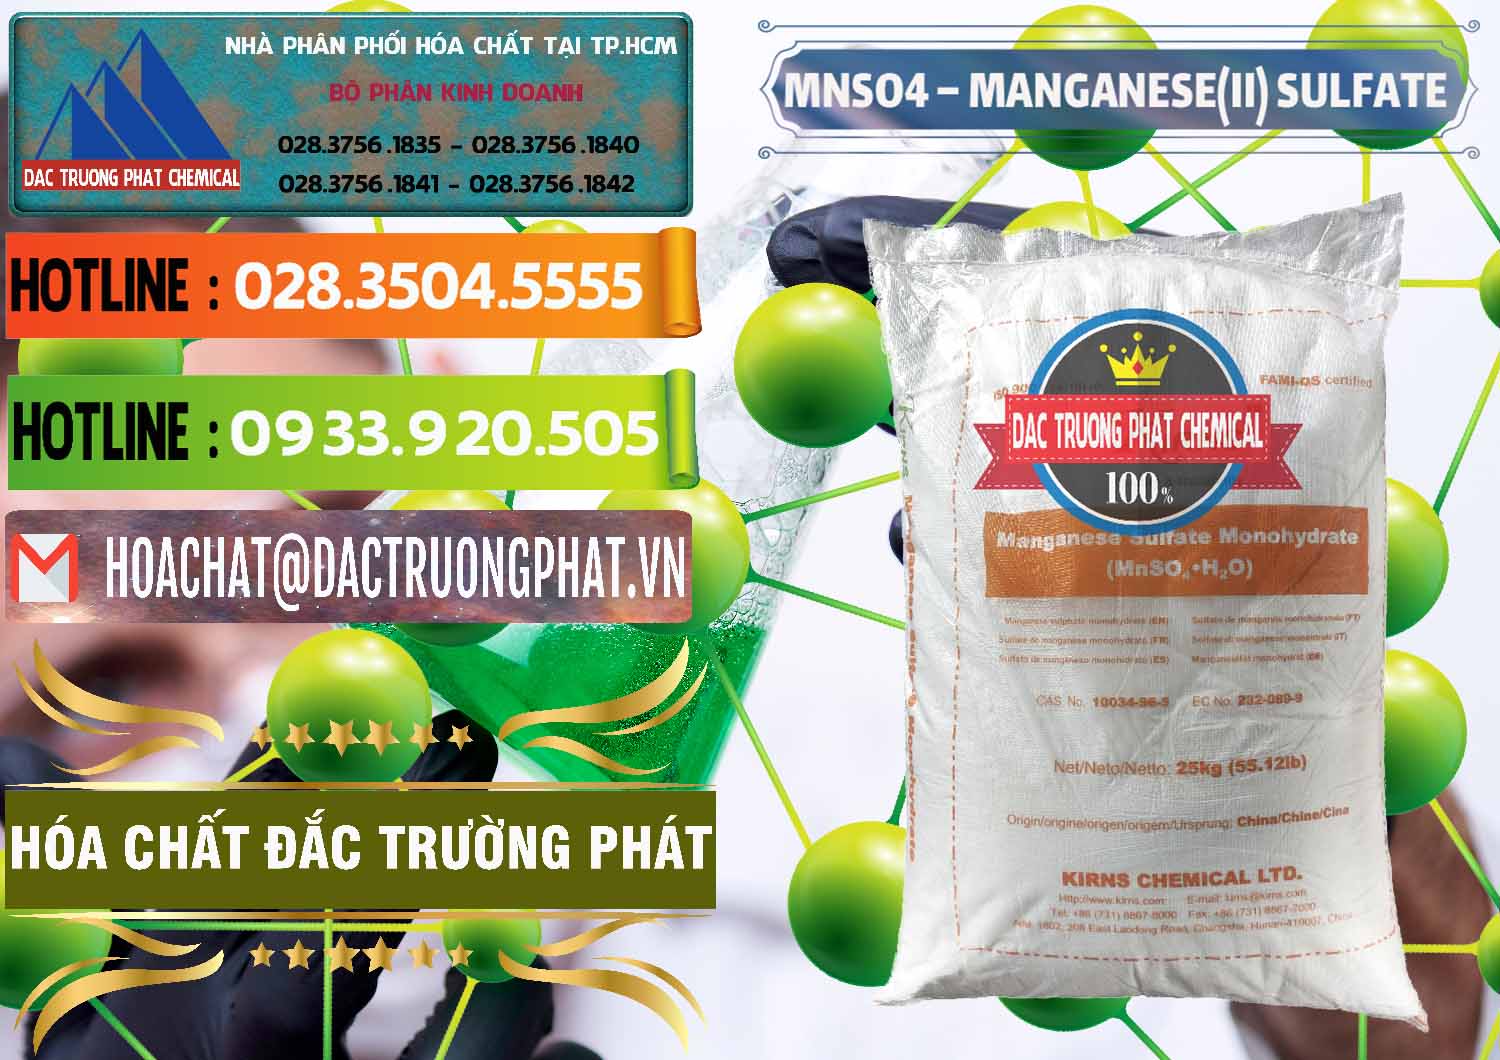 Cty chuyên kinh doanh - bán MNSO4 – Manganese (II) Sulfate Kirns Trung Quốc China - 0095 - Cty bán _ phân phối hóa chất tại TP.HCM - cungcaphoachat.com.vn